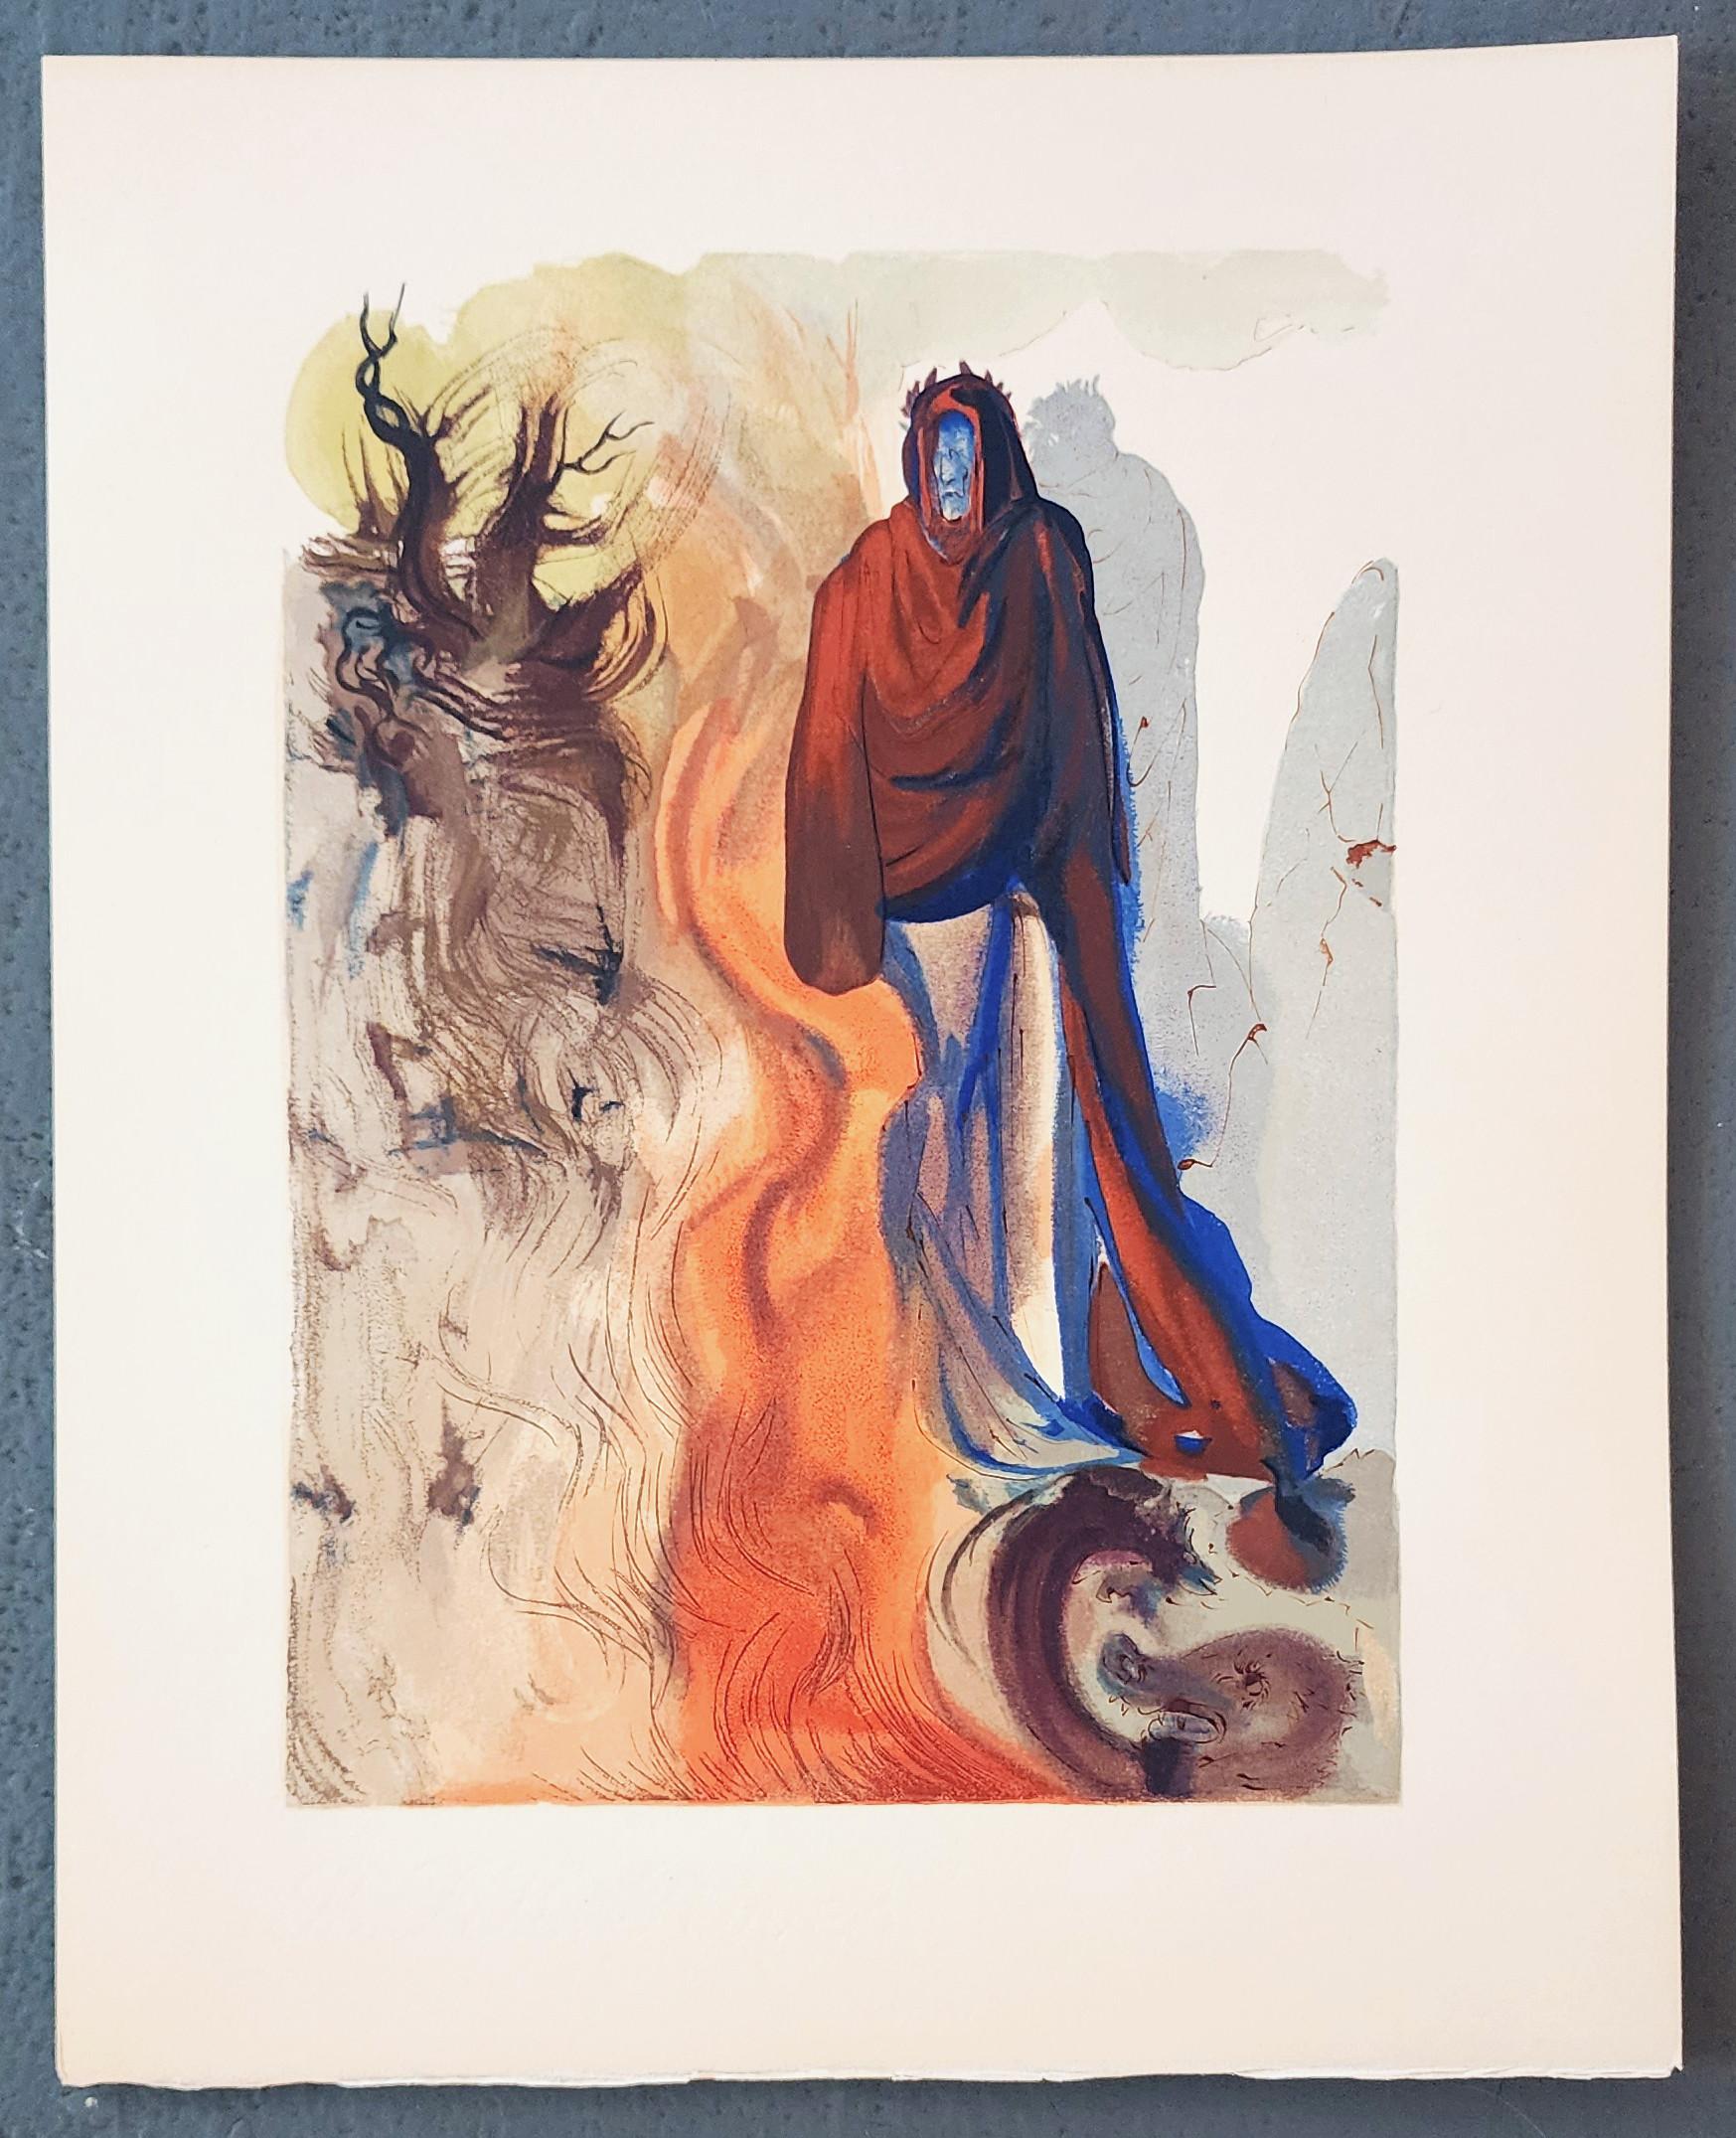 Apparition de Dite (SOLDES DU JOUR DU MEMORIAL - 44% DE RÉDUCTION) - Print de Salvador Dalí